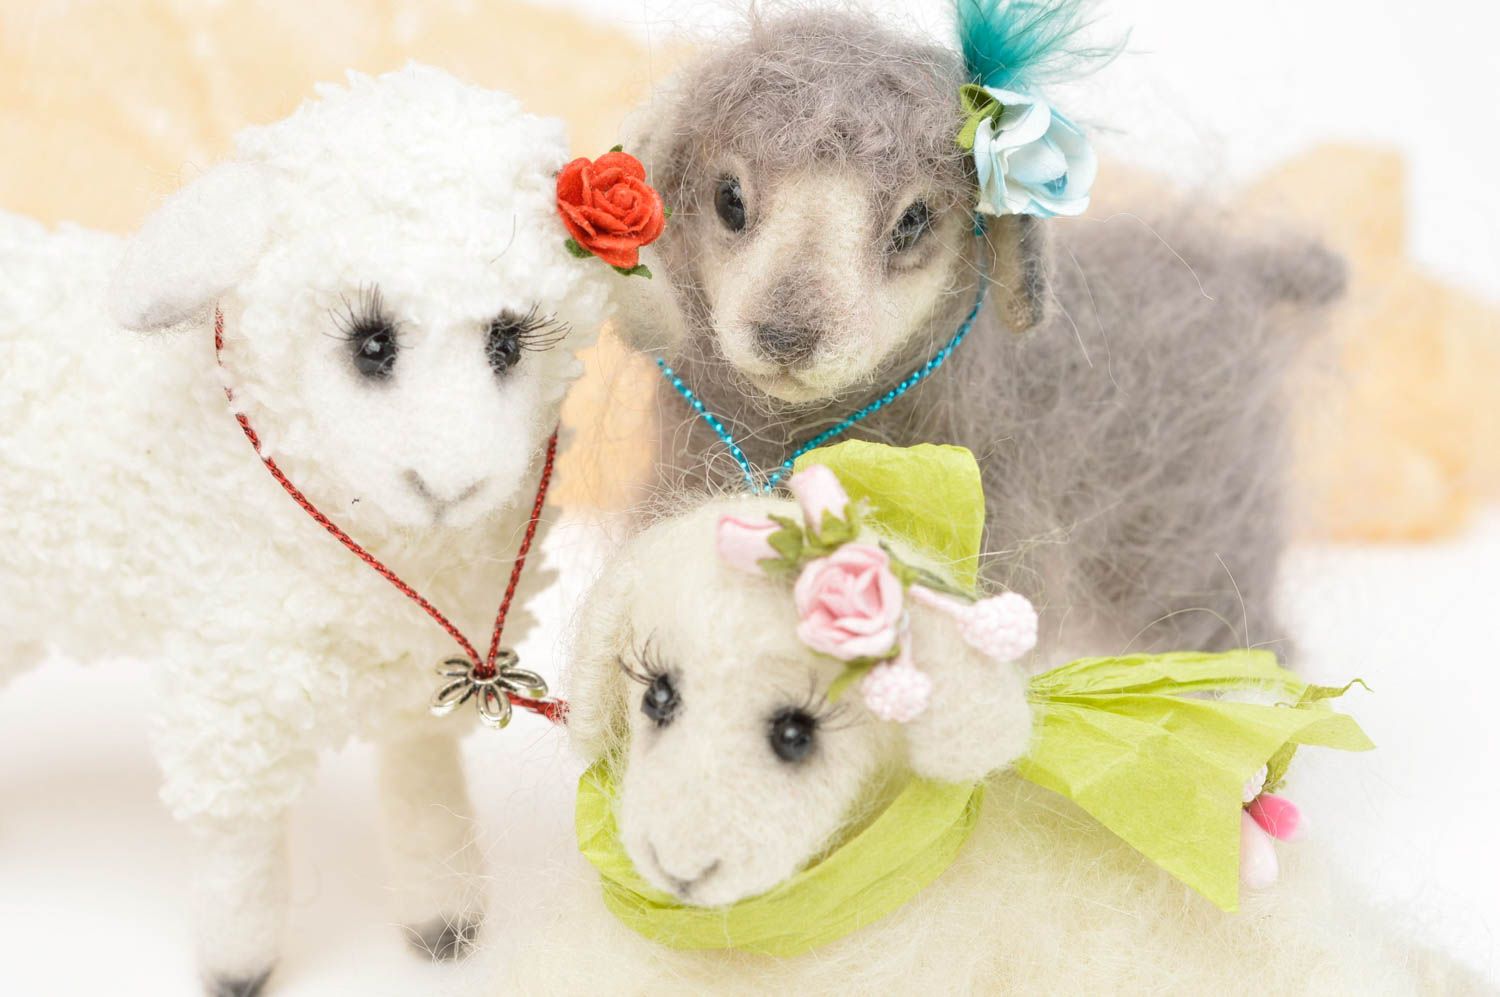 Handmade Spielzeug Set Stoff Tiere Geschenk Idee Kuschel Tiere Schafe schön foto 5